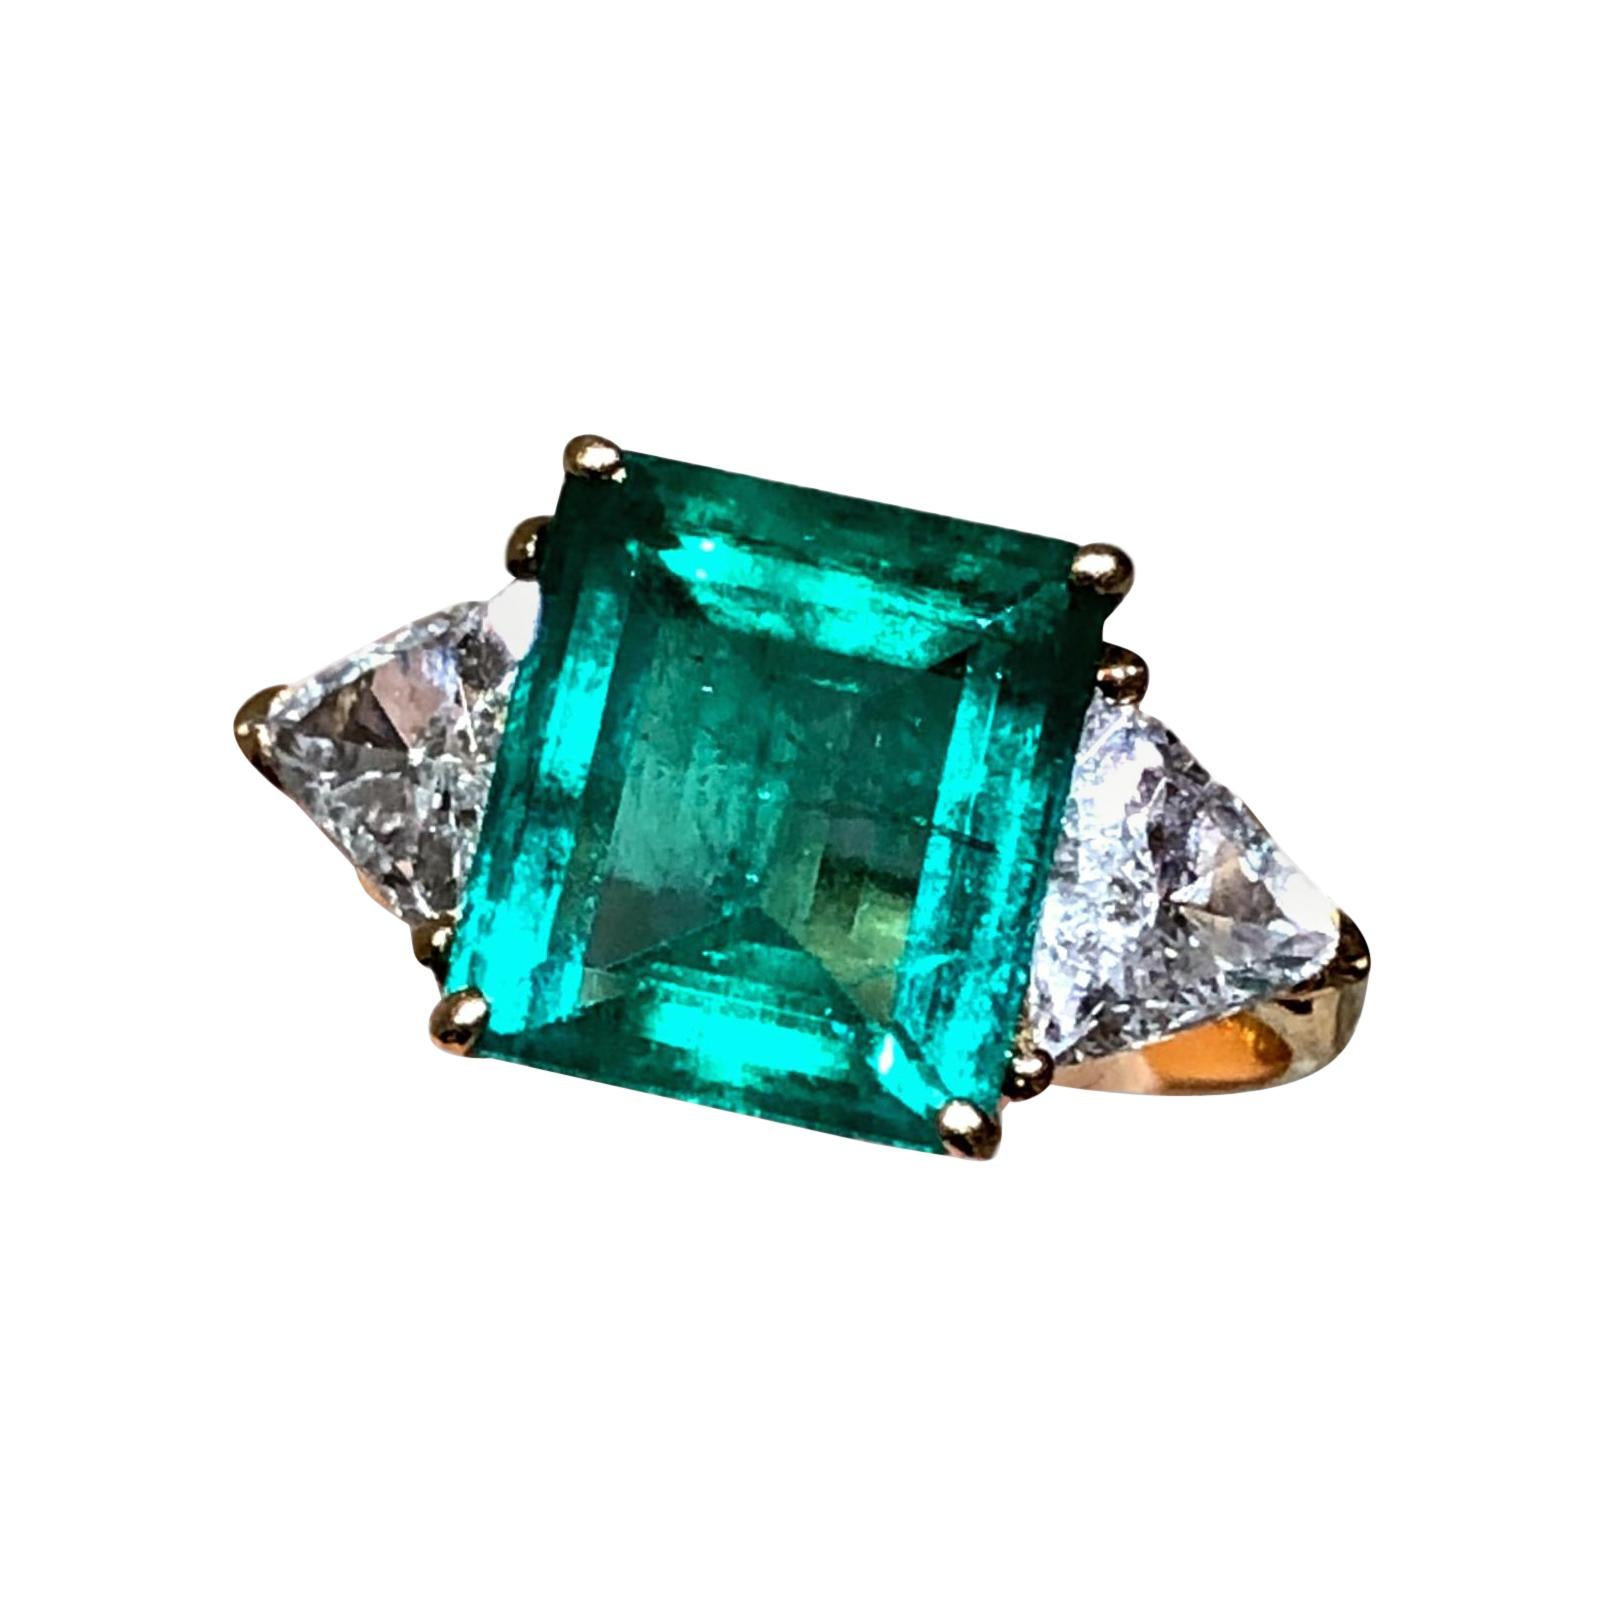 Stunning Columbia Emerald Diamond 18k Yellow Gold Three Stone Engagement Ring